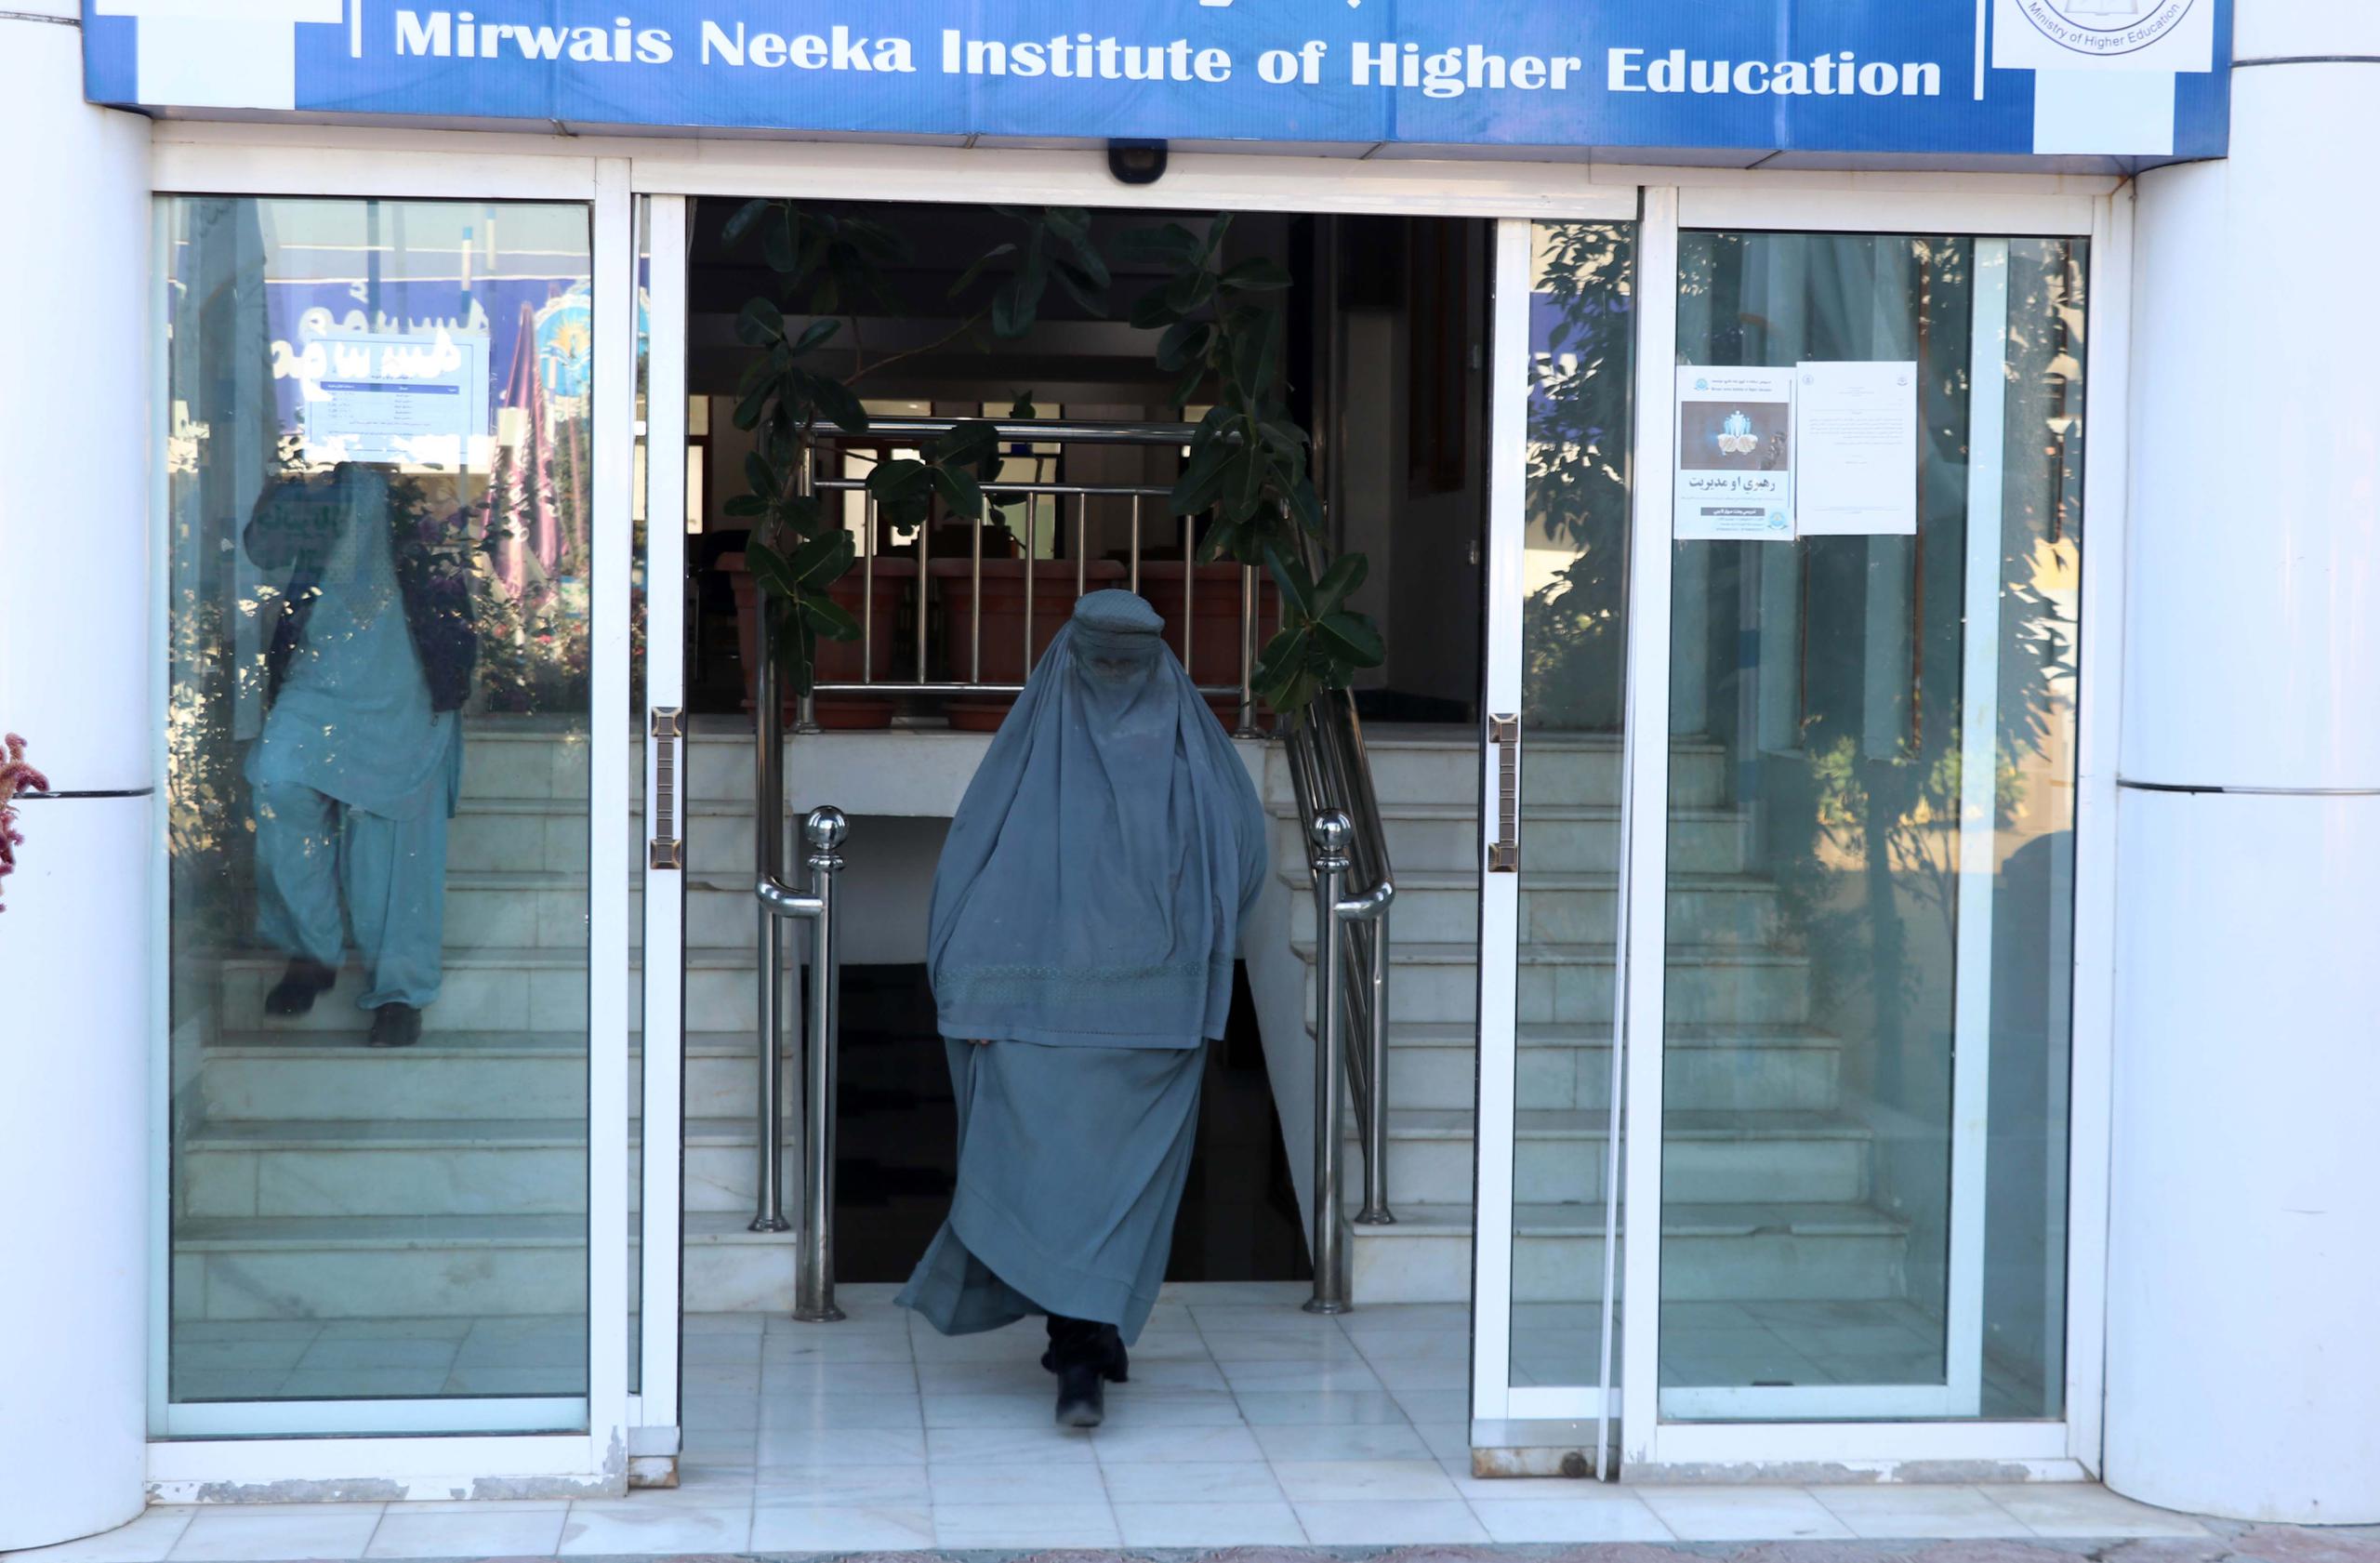 La prohibición a las adolescentes de asistir a las escuelas, la segregación por sexos en lugares públicos, la obligación de usar velo y estar acompañadas por un familiar masculino en trayectos largos son algunas de las restricciones impuestas por los talibanes.